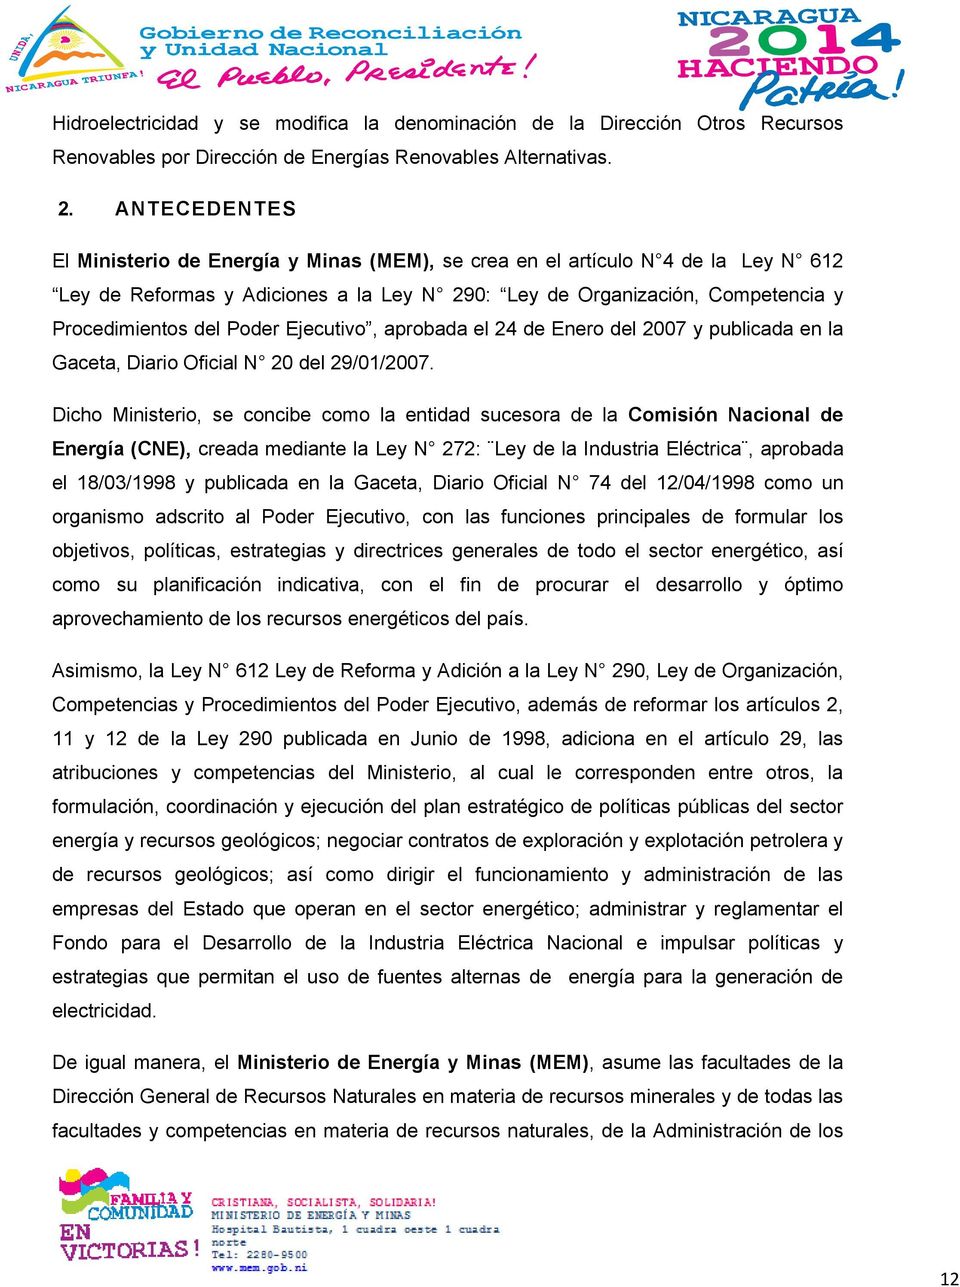 Ejecutivo, aprobada el 24 de Enero del 2007 y publicada en la Gaceta, Diario Oficial N 20 del 29/01/2007.